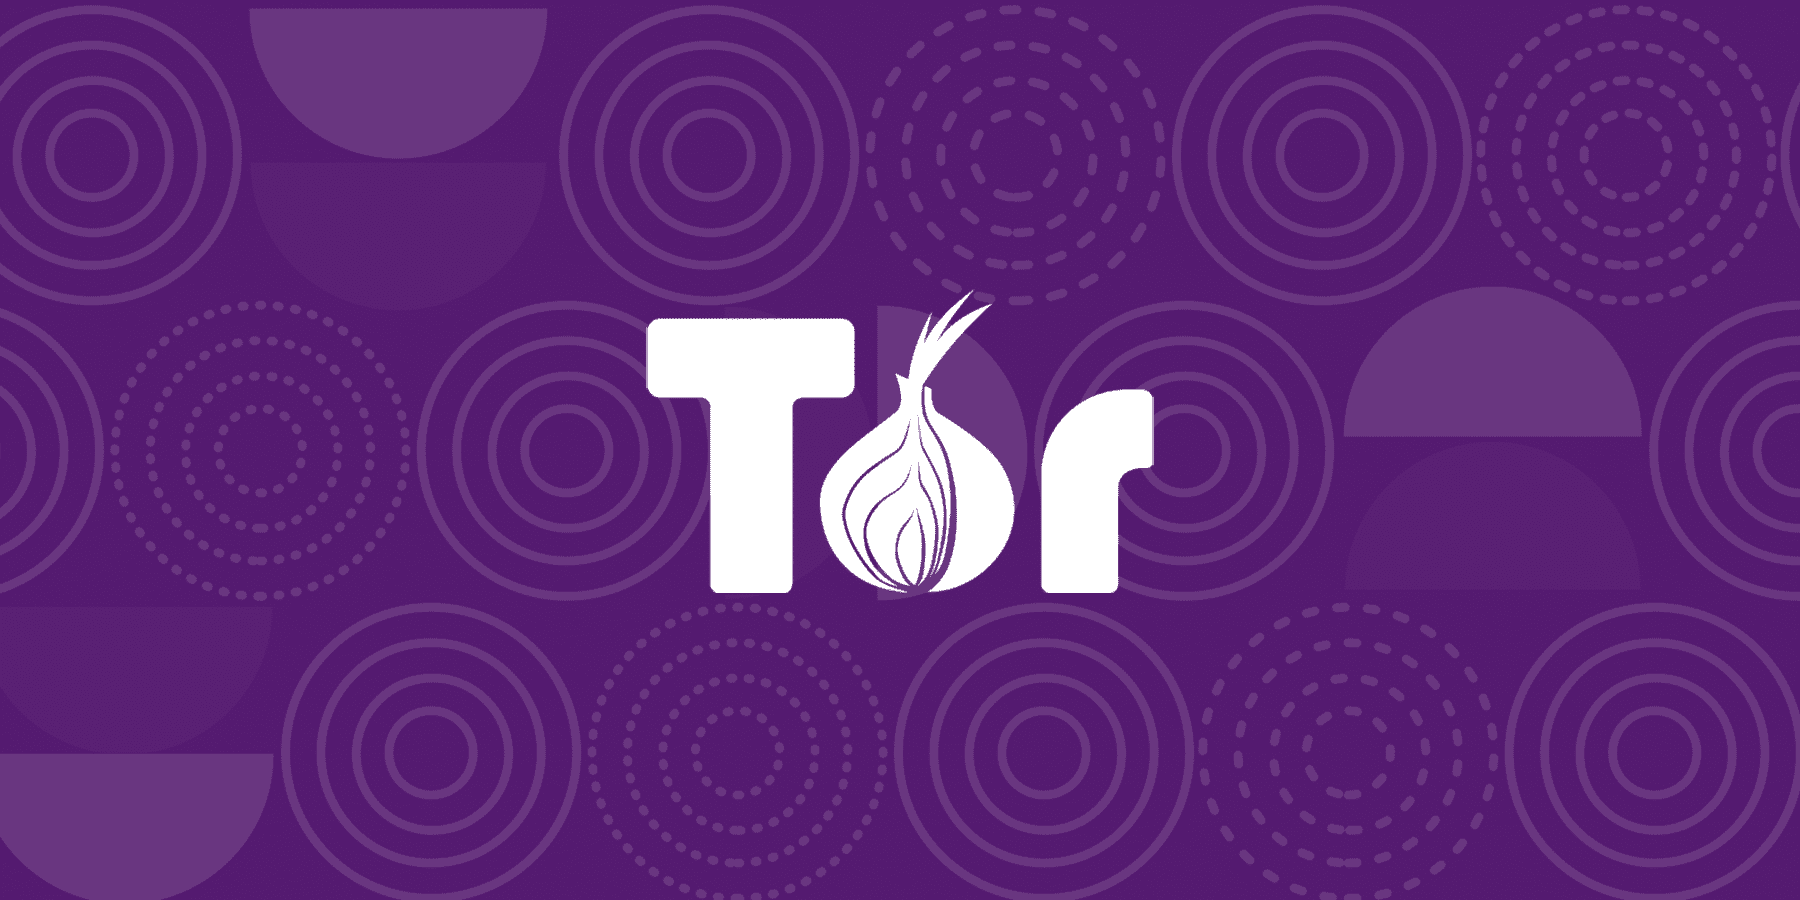 Tor browser ru exe mega сайты tor browser bundle mega вход